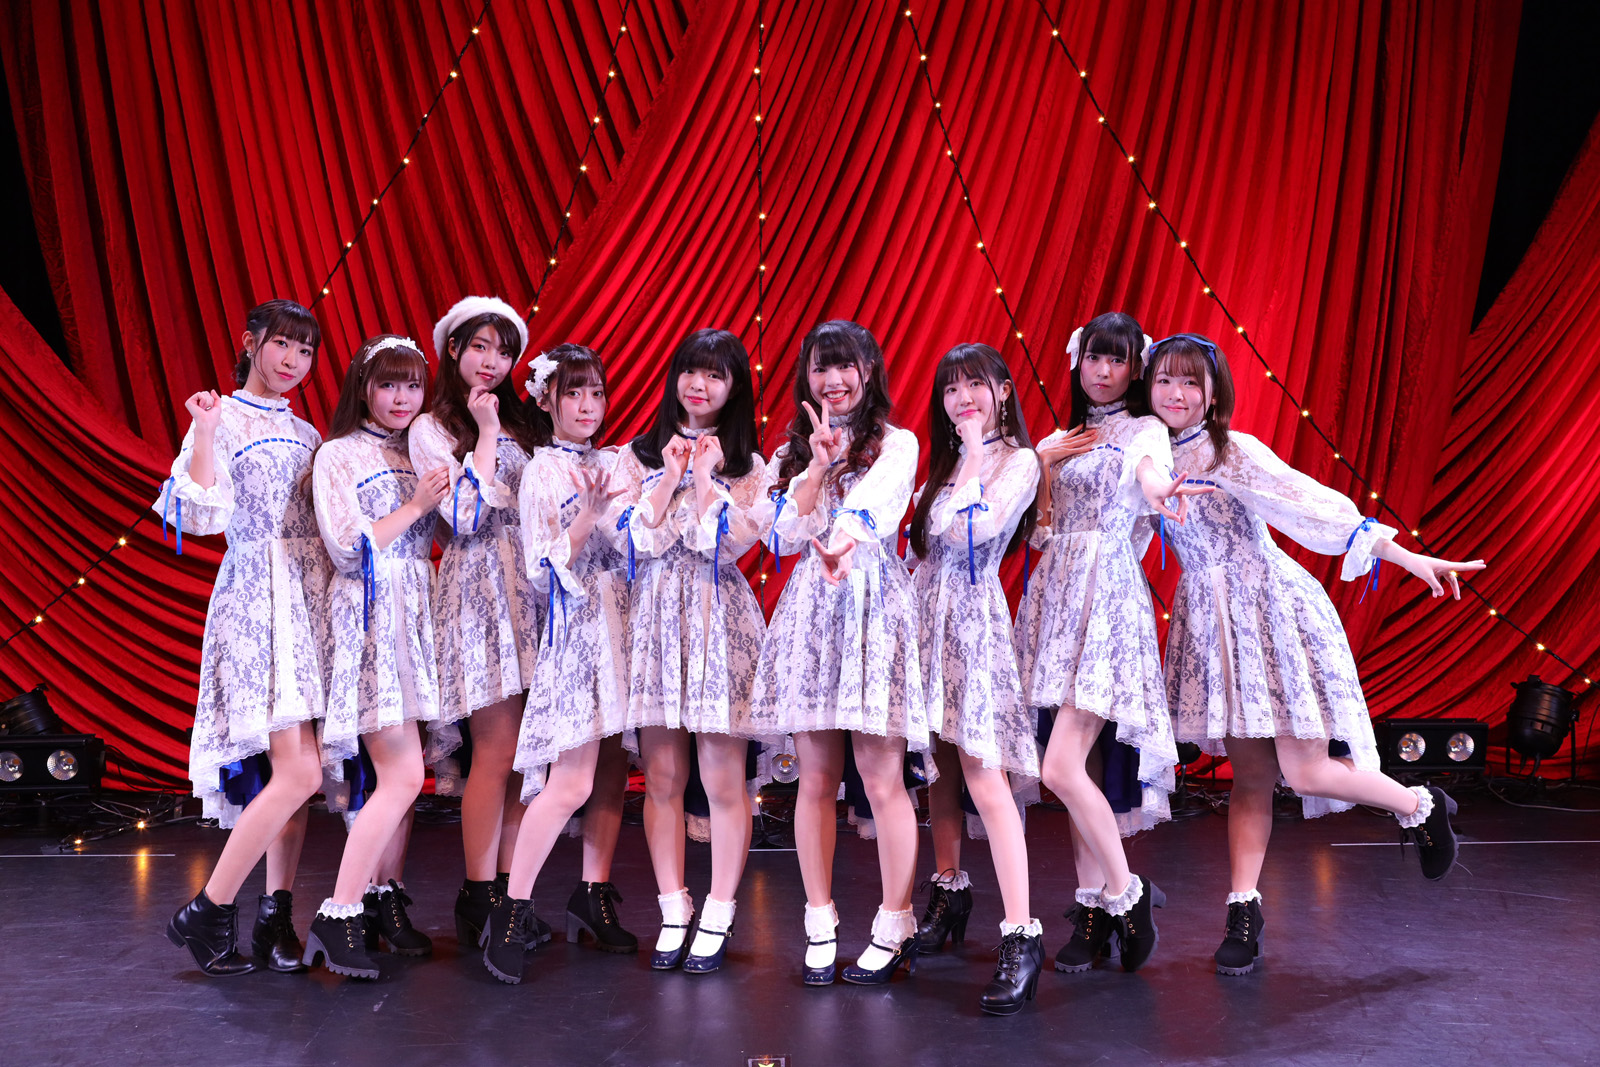 ピュアリーモンスター2ndワンマンライブ「Happy Merry Merry Christmas LIVE☆」ライブレポート